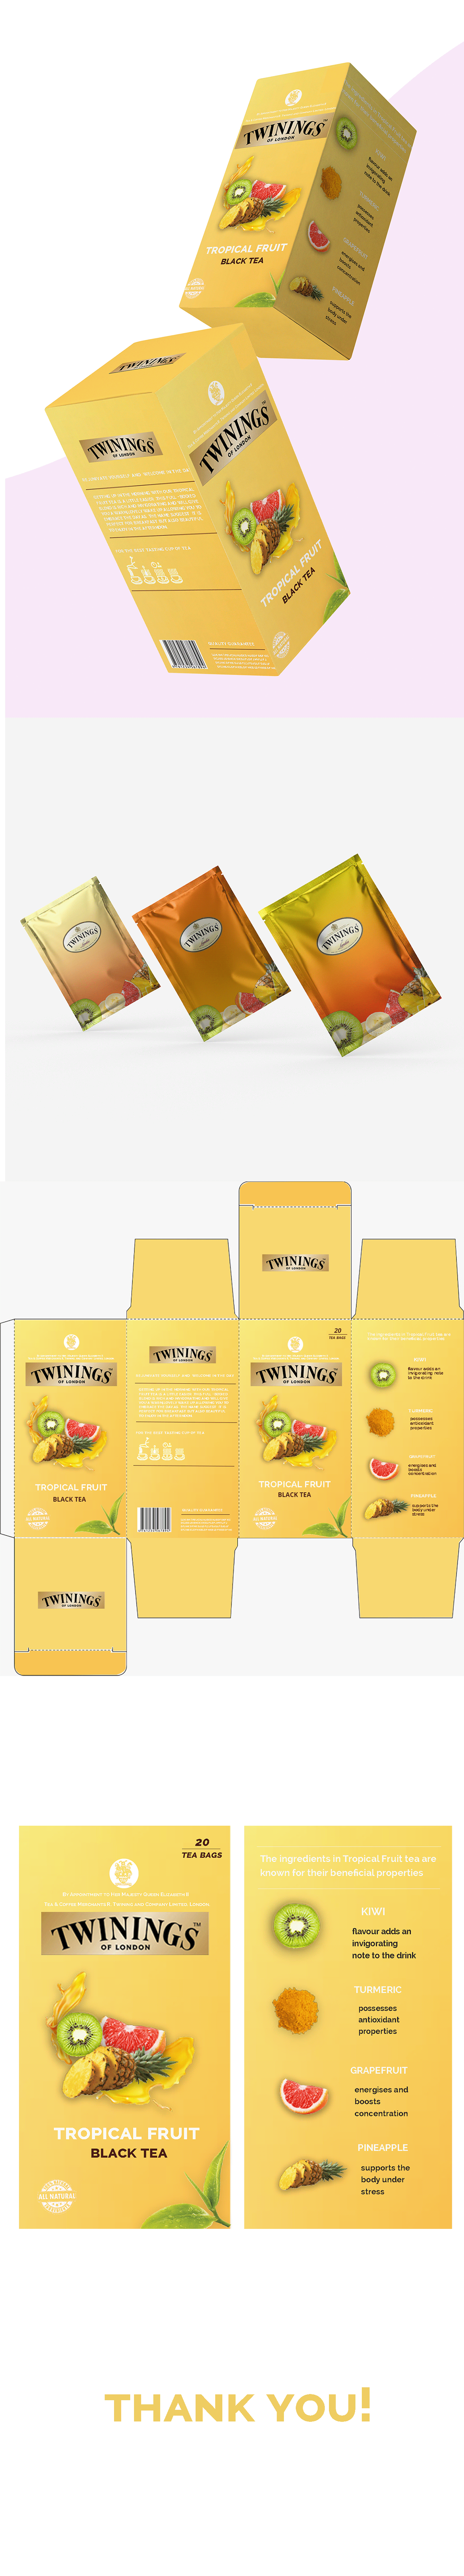 Advertising  box branding  Diecut Mockup Packaging packaging design product